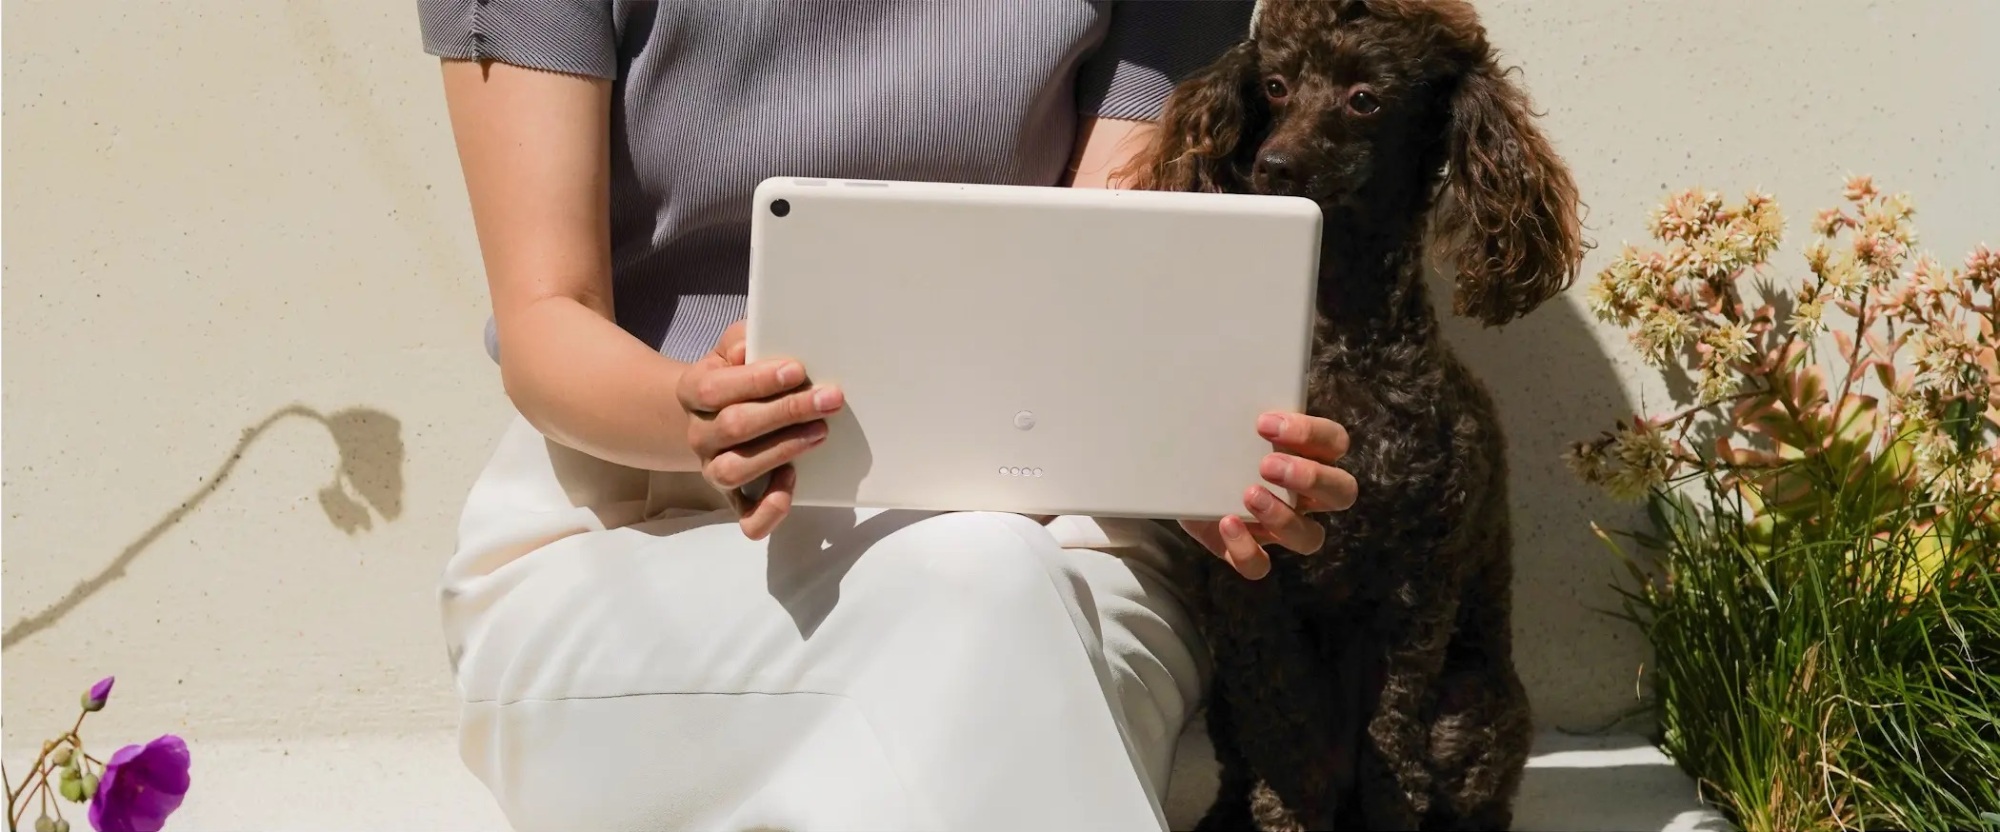 Una persona sentada usando la tableta Pixel con un perro mirando la pantalla